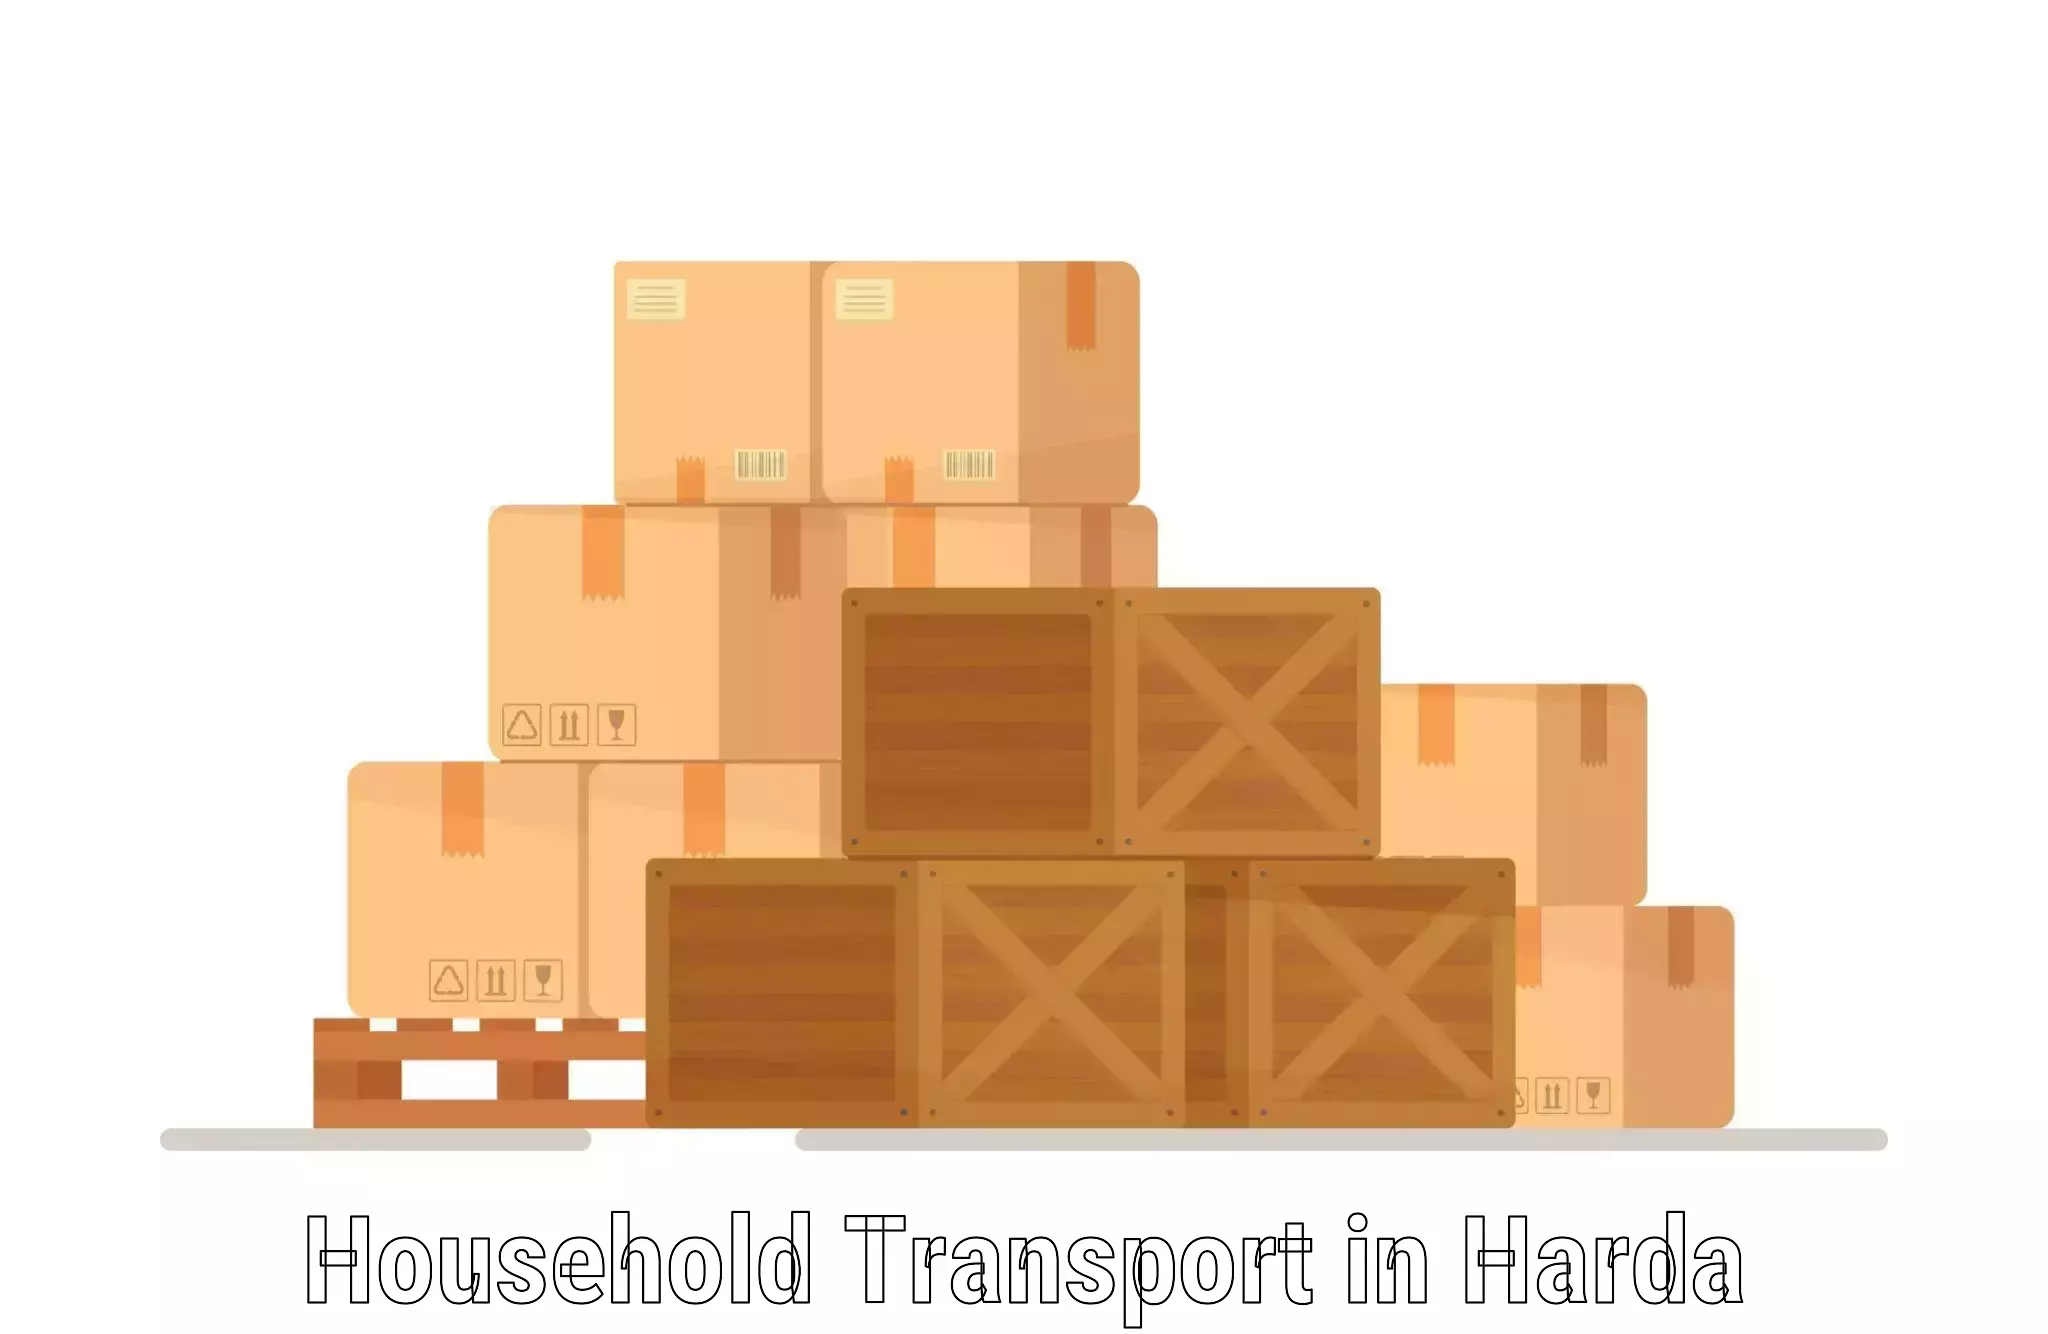 Online household goods transport in Harda